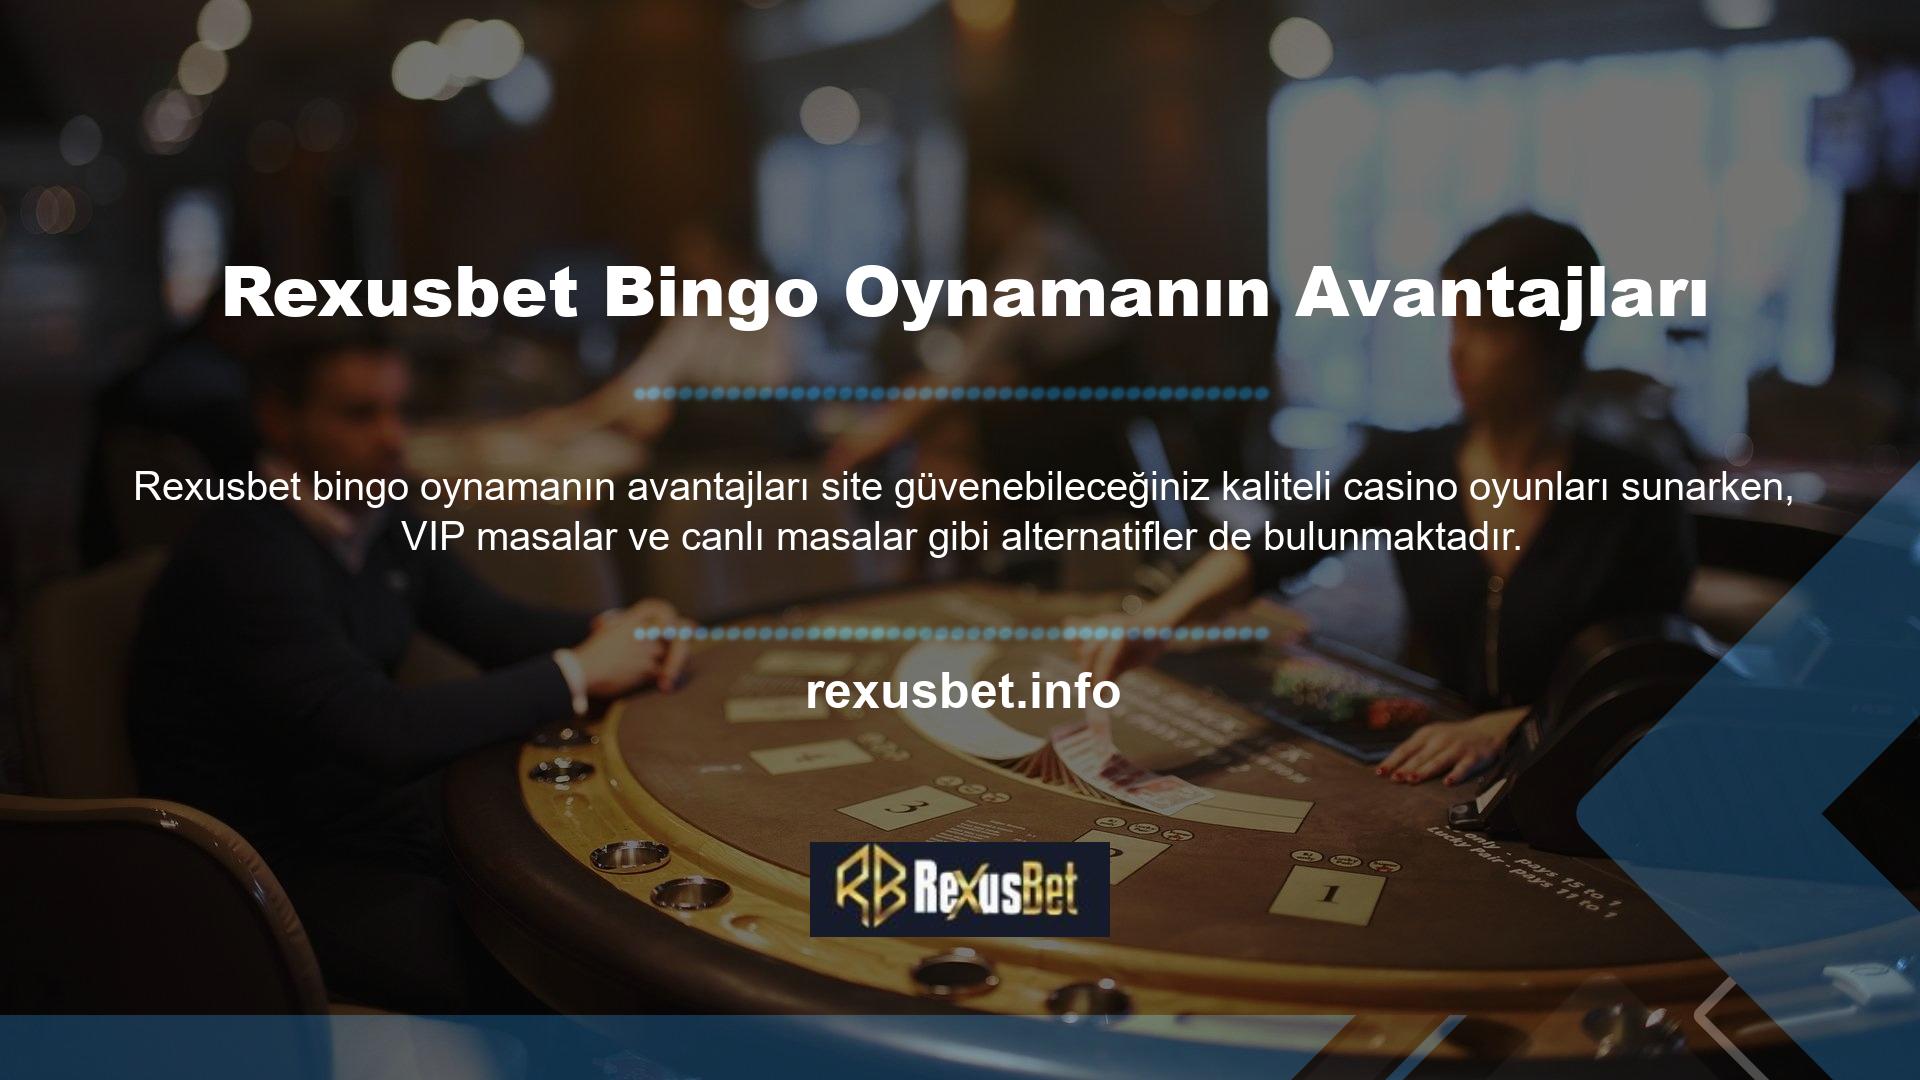 Casino oyunları oynamaktan ve kazanmaktan hoşlanıyorsanız, Rexusbet göz atın